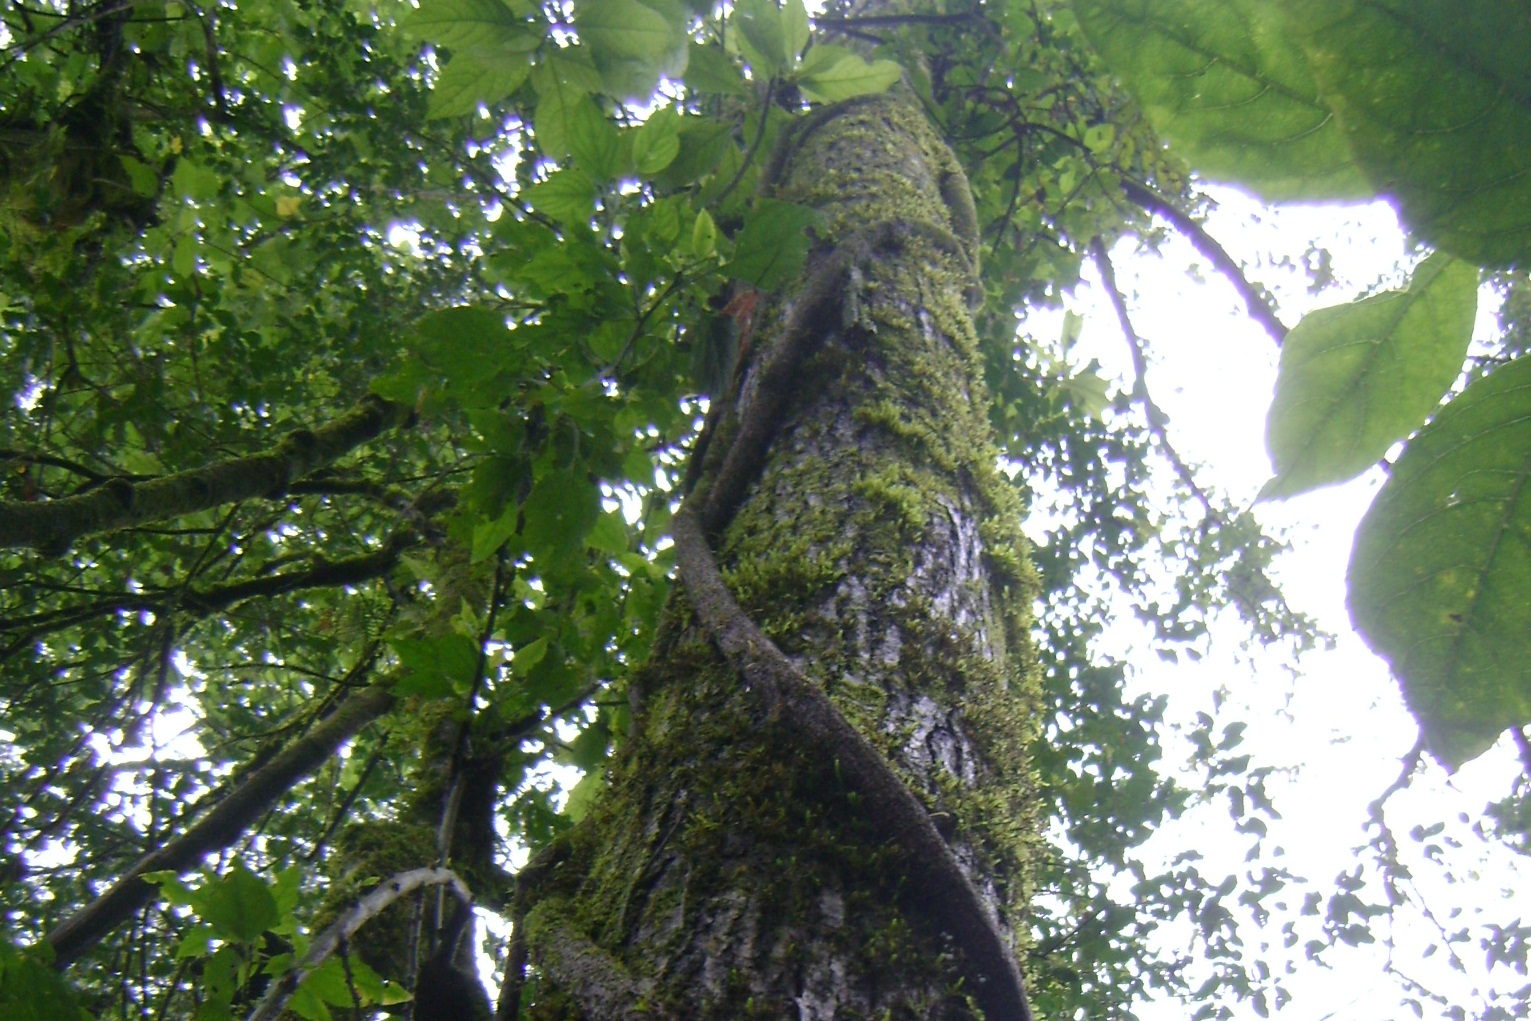 En la sierra de San Javier se presentan bosques invadidos por Ligustrum lucidum, que afecta la biodiversidad nativa. Esta invasora, además de no ser un soporte adecuado de lianas, excluye a las leñosas nativas que las hospedan.